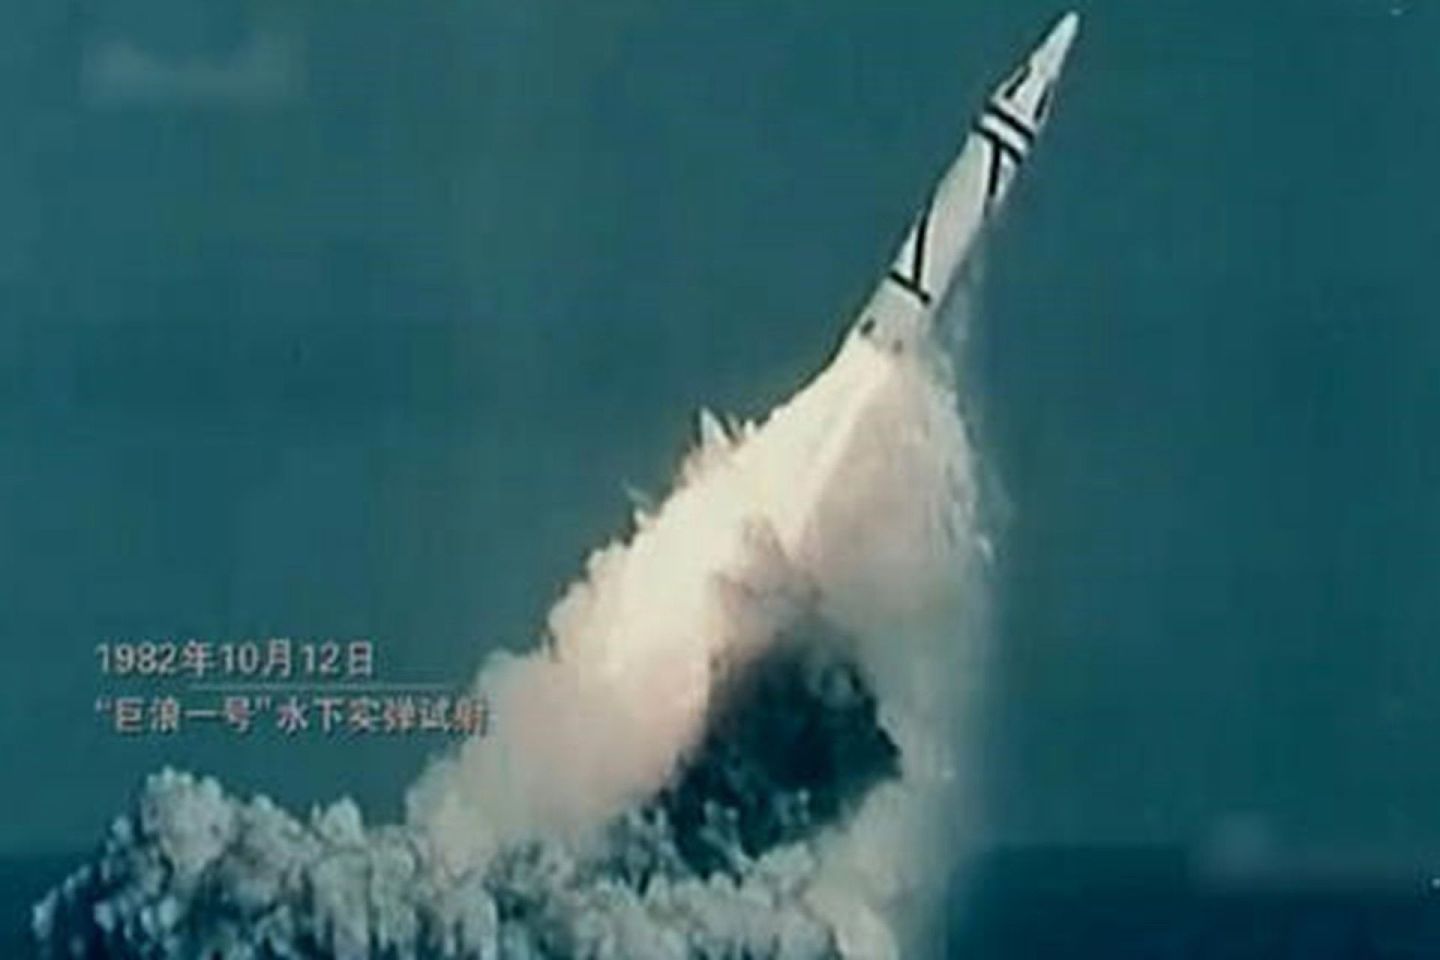 中国第一代潜射核导弹“巨浪-Ⅰ”发射画面。（中国央视截图）